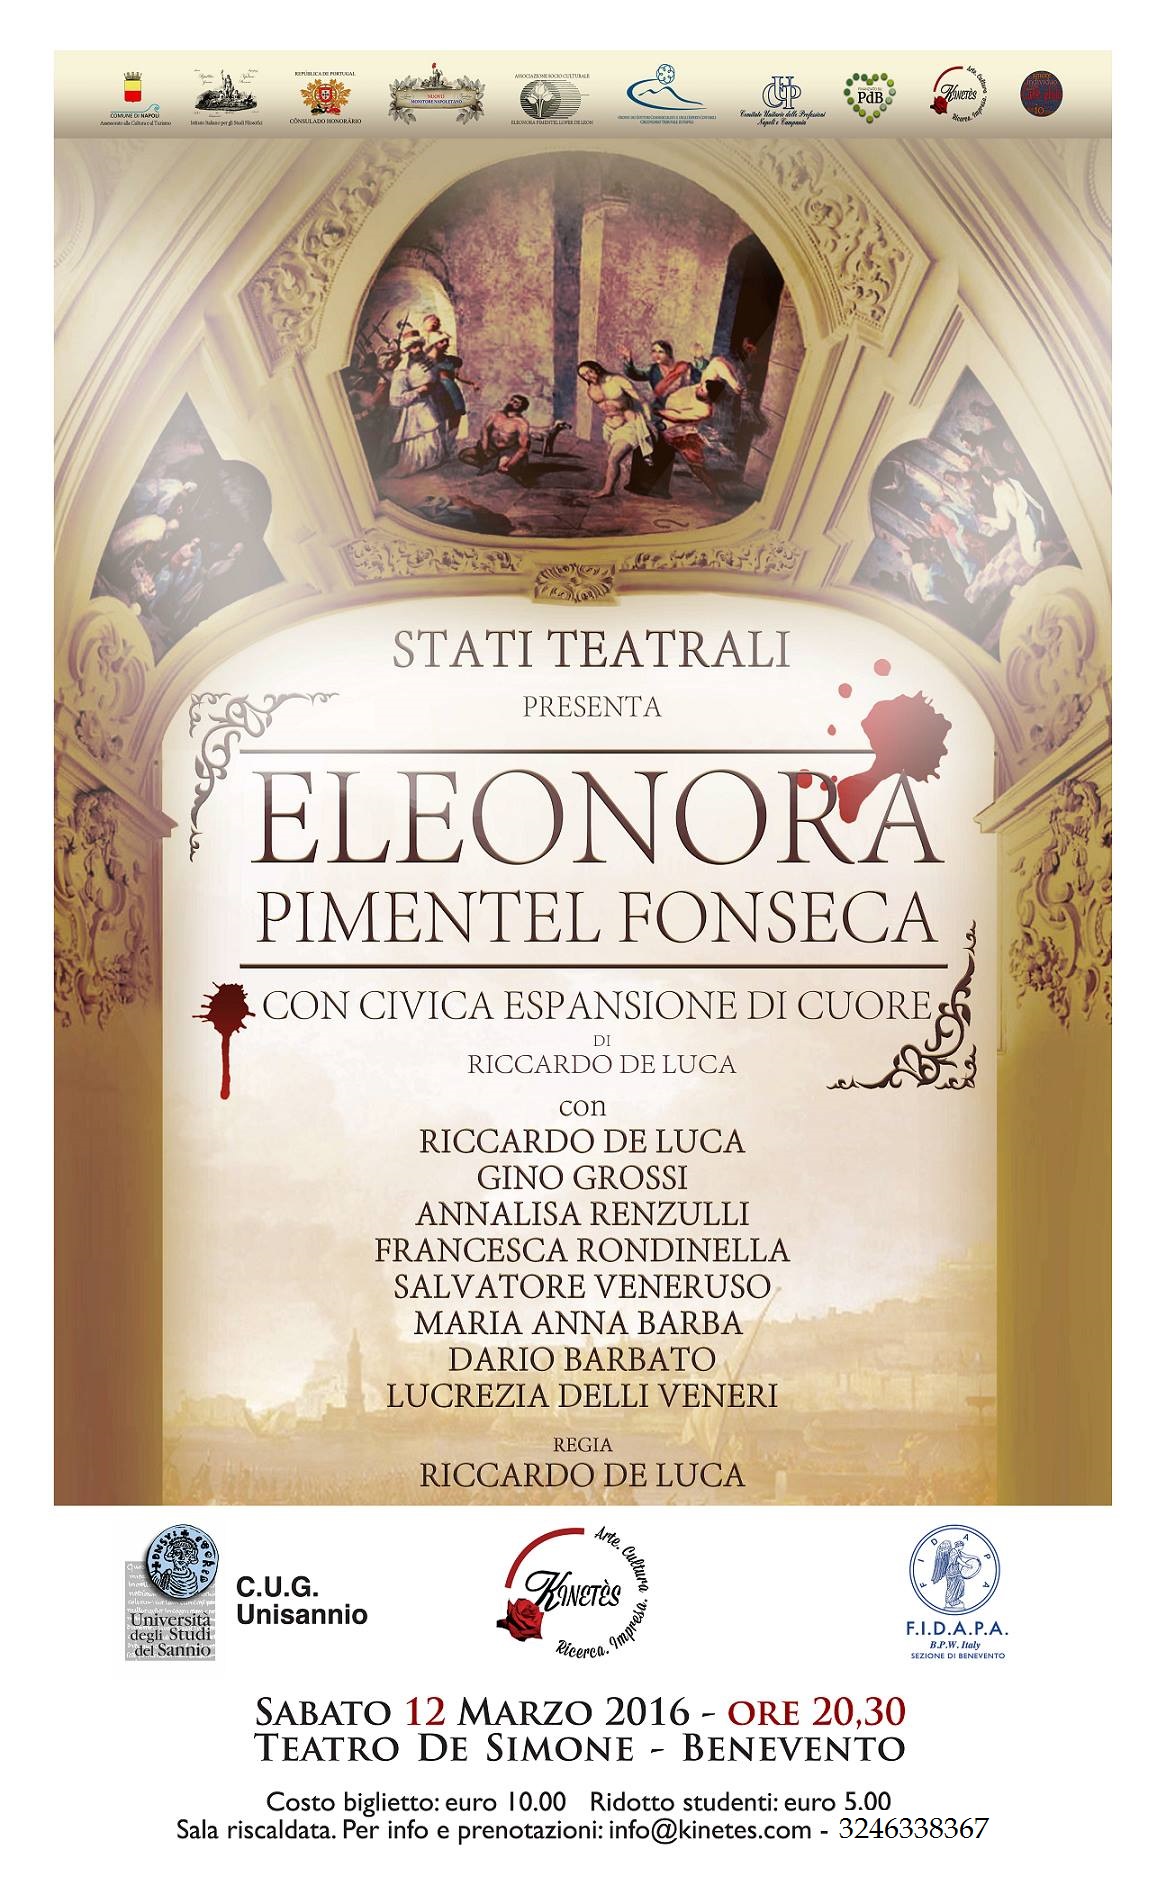 Tutto pronto per lo spettacolo su Eleonora Pimentel Fonseca